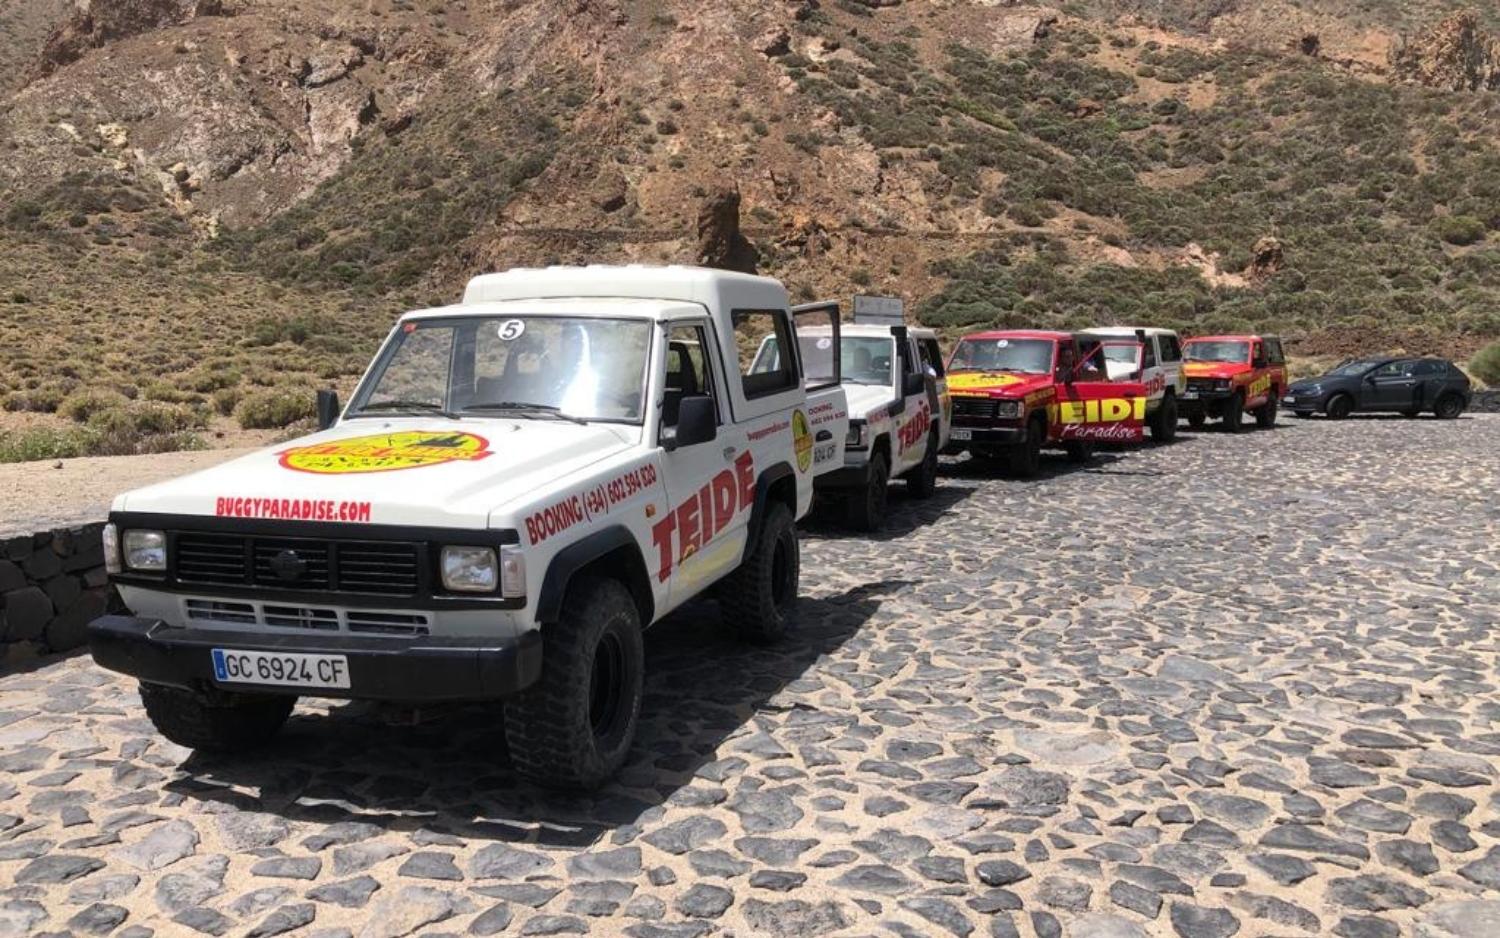 Alquilar un Jeep en Tenerife para ir al Teide